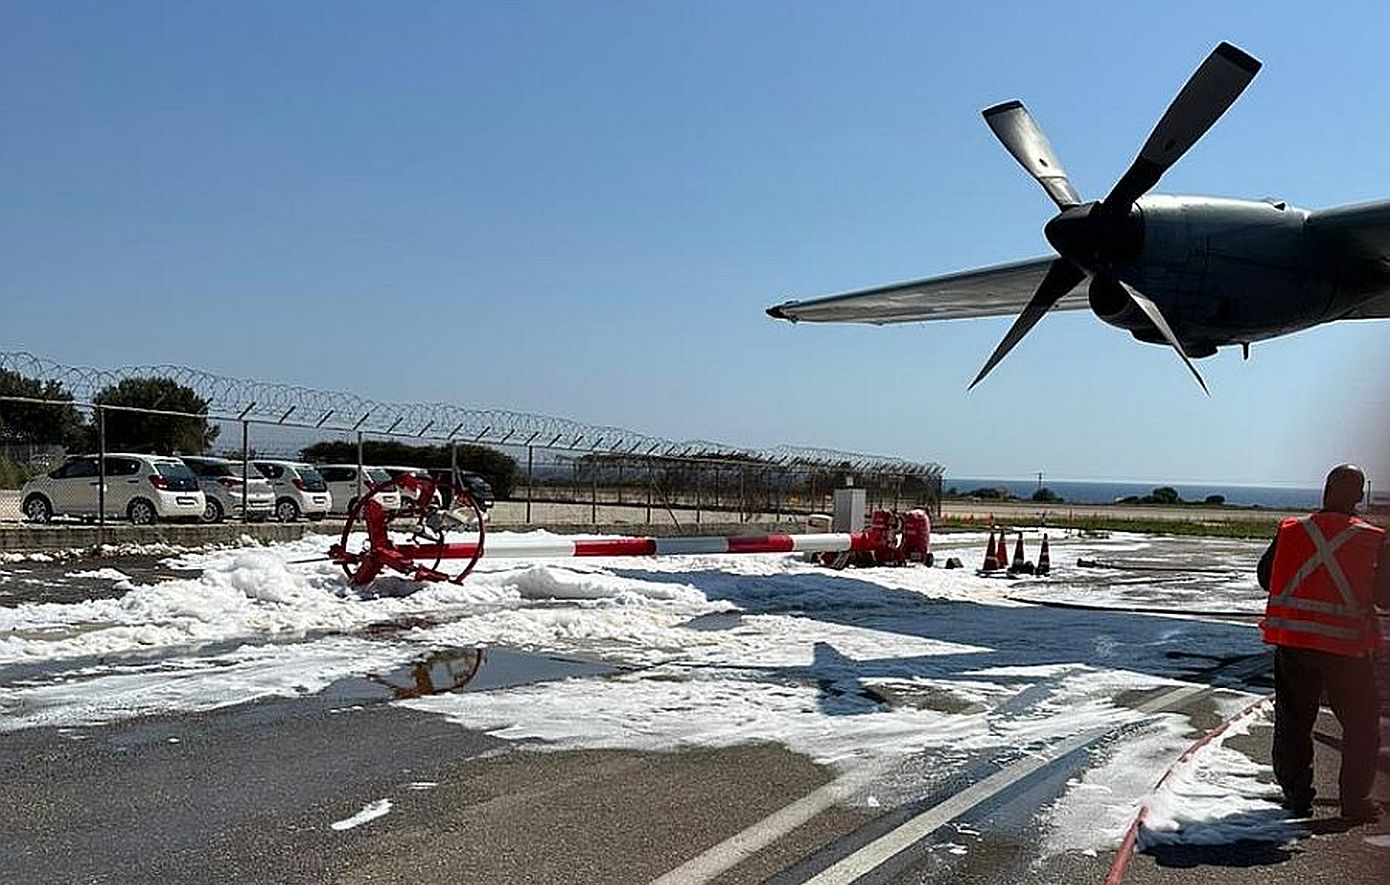 Επιτυχημένη επιχείρηση στο αεροδρόμιο της Κεφαλονιάς σε προσγείωση μεταγωγικού αεροσκάφους C130 που παρουσίασε πρόβλημα